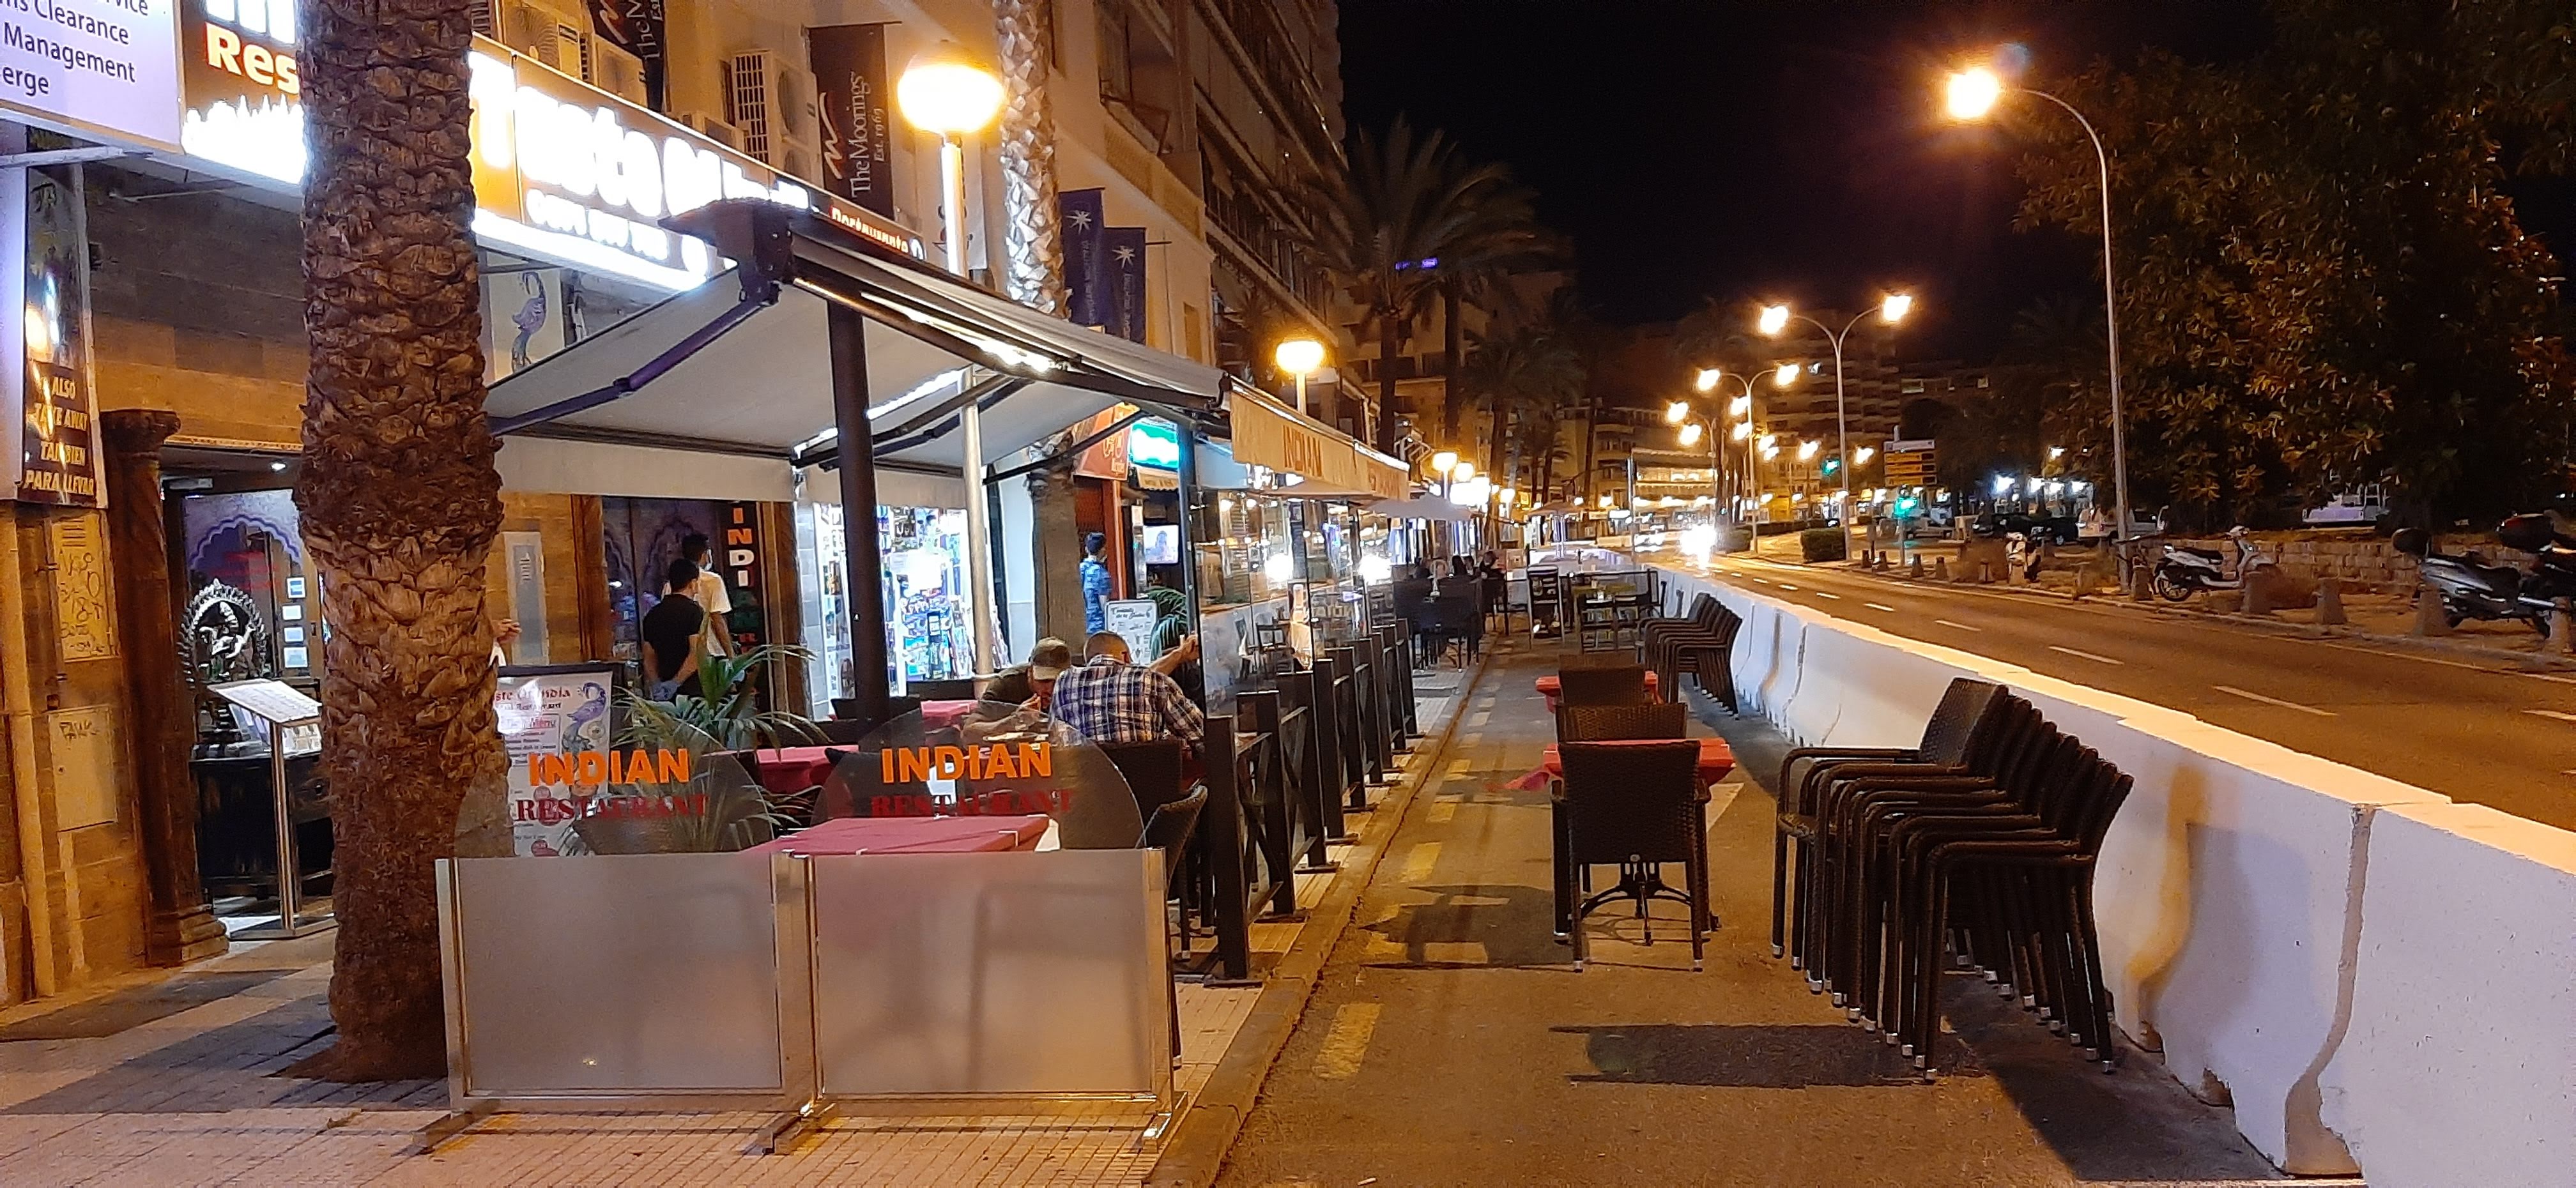 Die APB erinnert die Besitzer der Sitzterrassen an der Strandpromenade von Palma an die Einhaltung der Schließzeiten